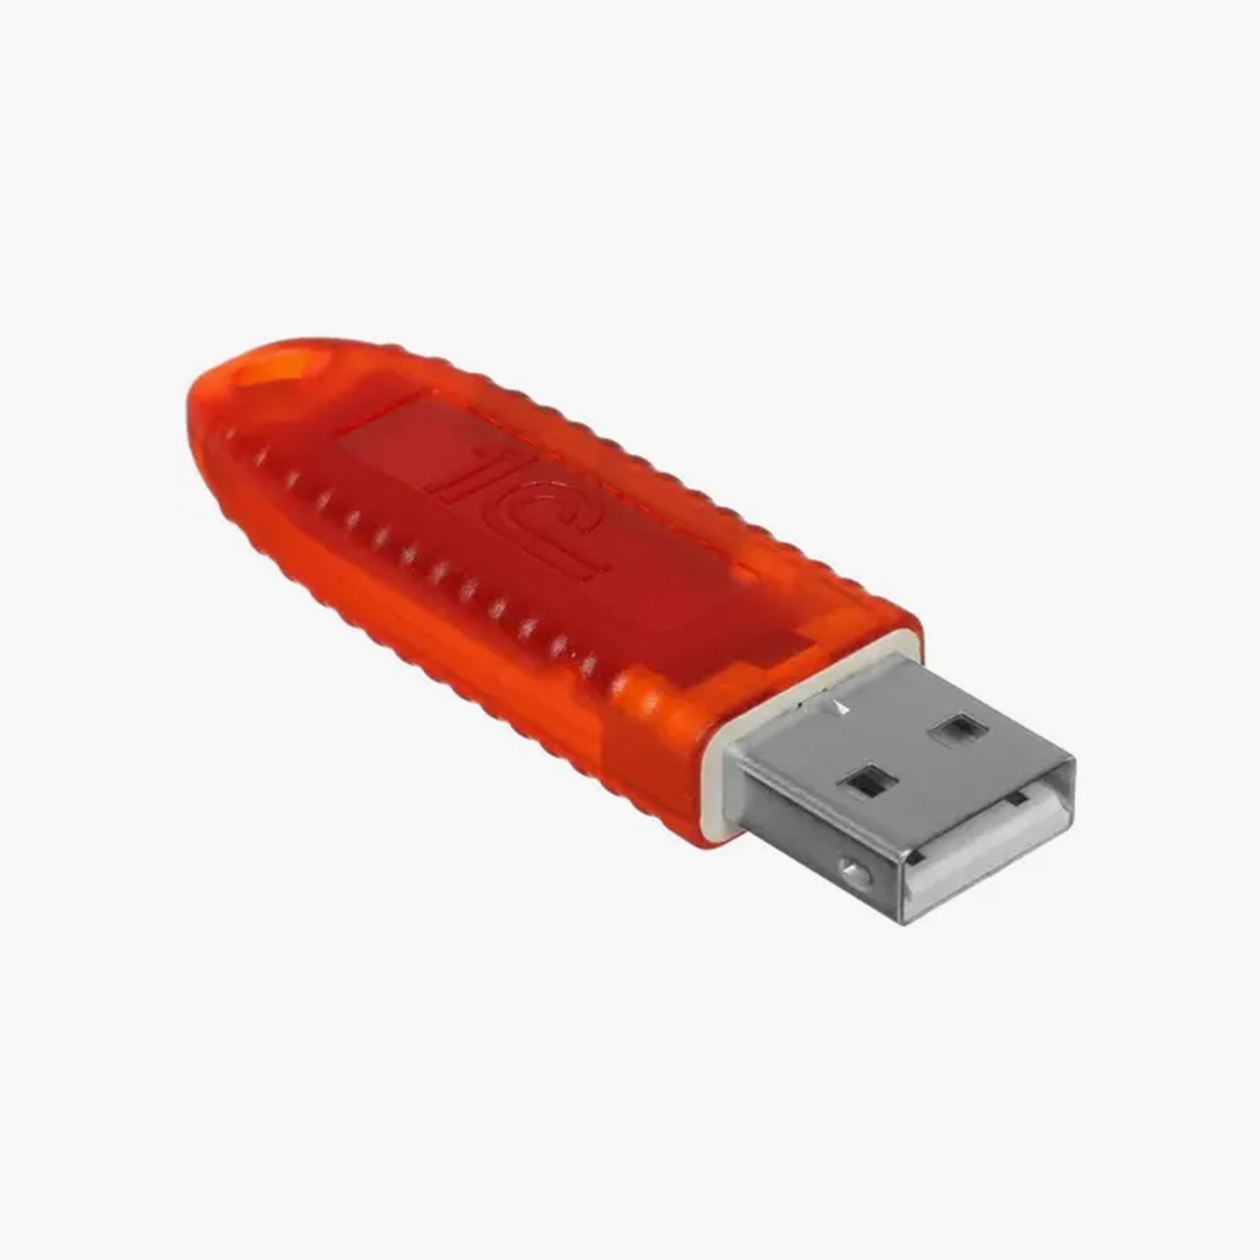 USB⁠-⁠токен выглядит как обычная флешка. Стоит примерно 1700 ₽